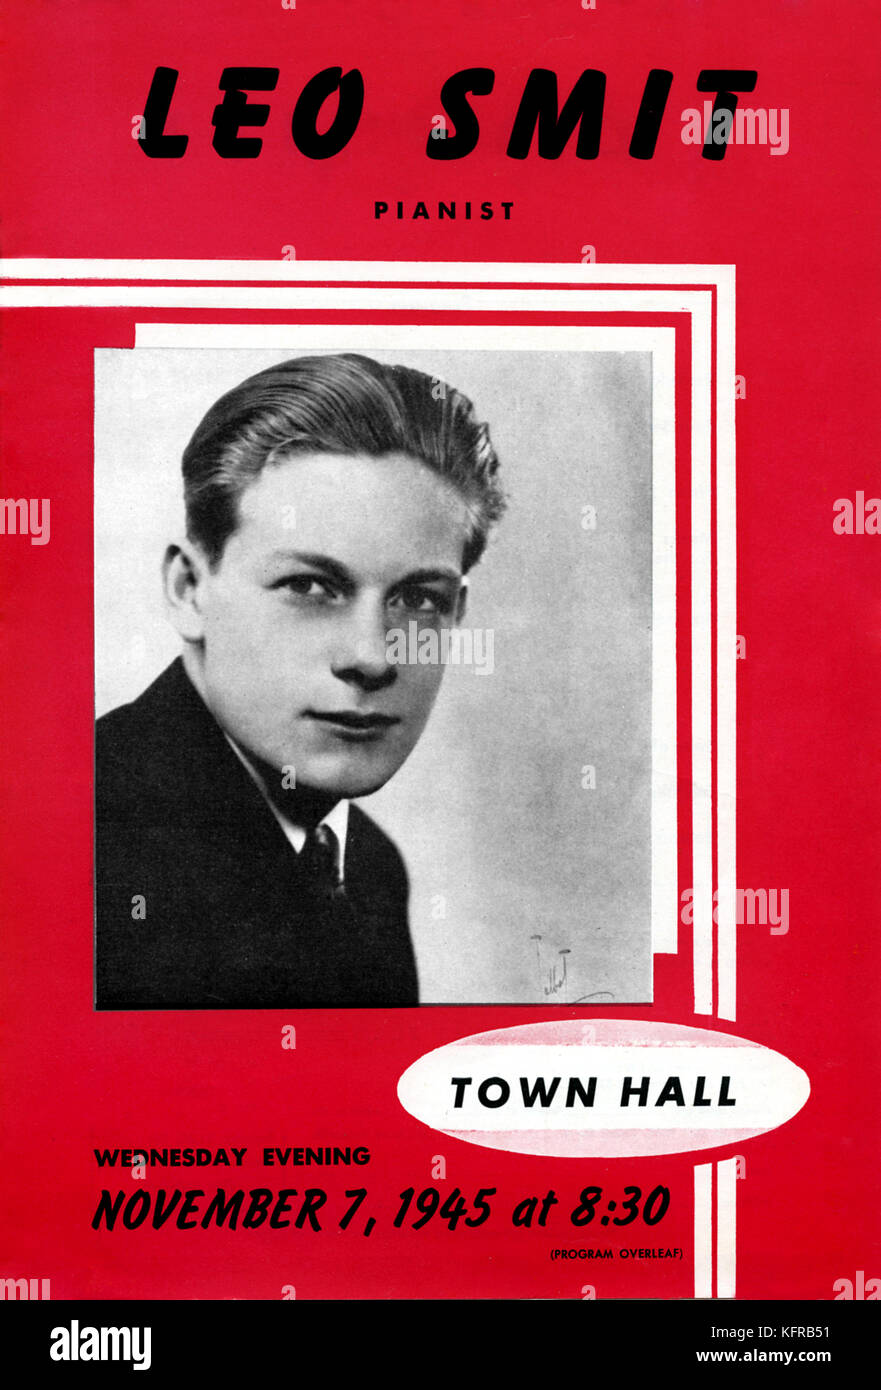 Leo Smit - concierto cartel vertical. Concierto en el Town Hall, Nueva York, EE.UU., el 7 de noviembre de 1945. LS: pianista y compositor estadounidense de música clásica contemporánea, el 12 de enero de 1921 - 12 de diciembre de 1999. Foto de stock